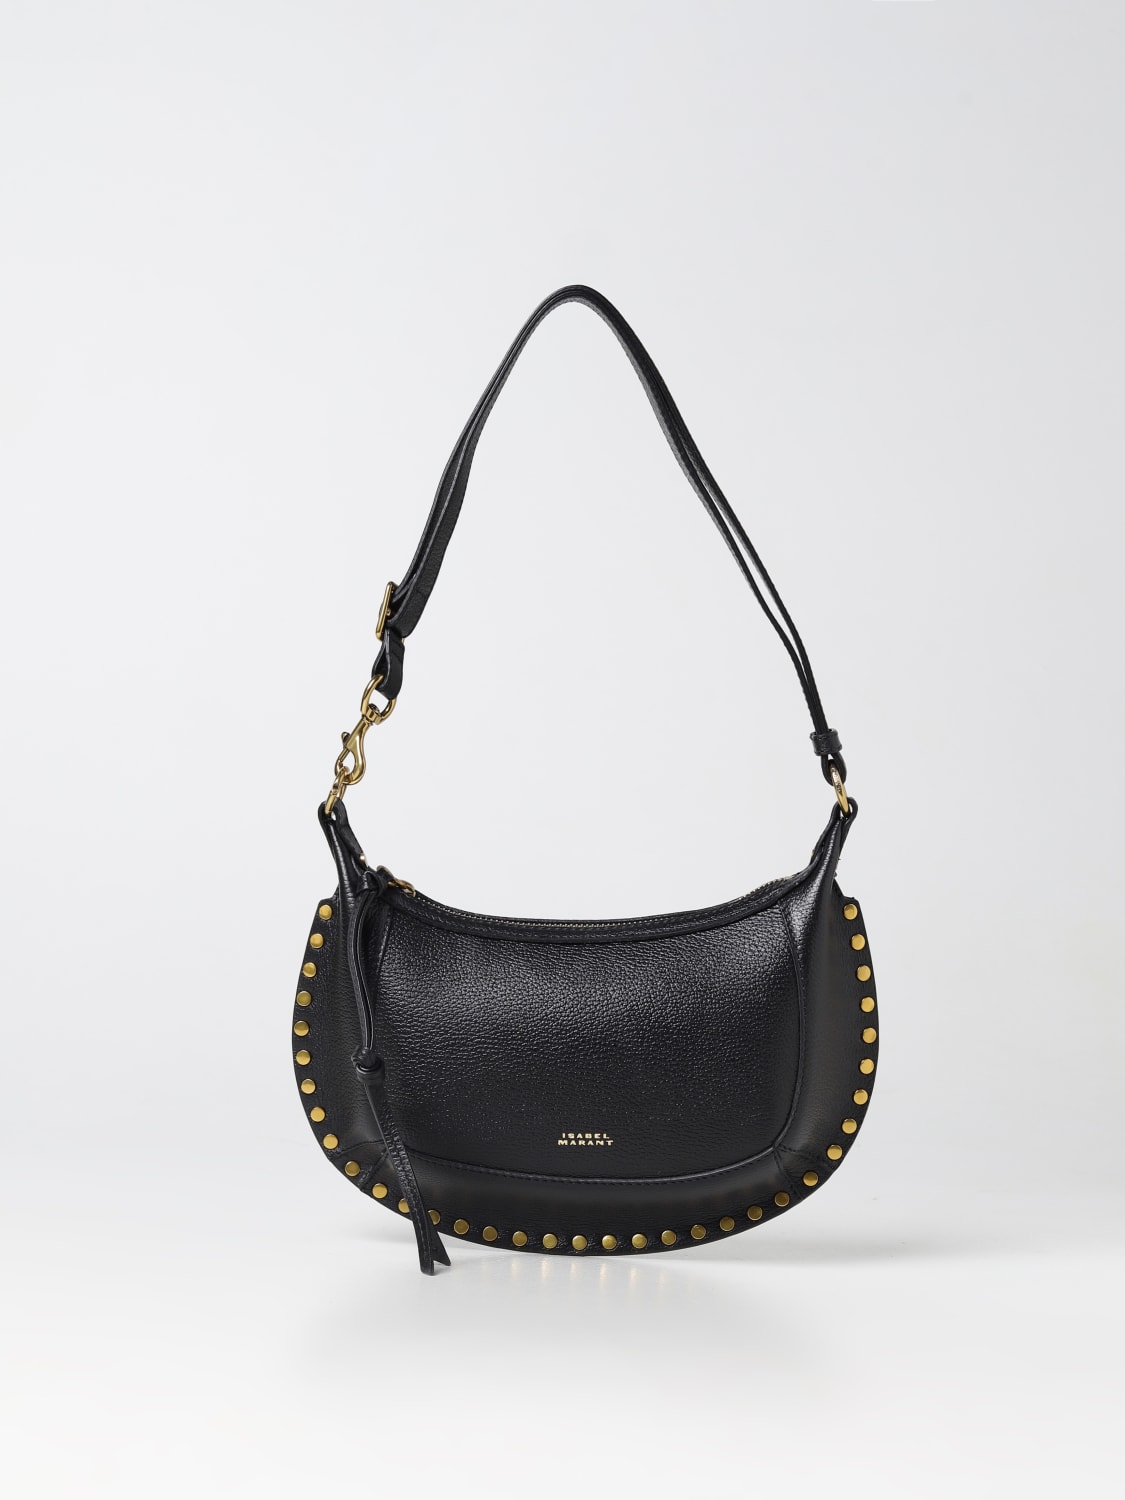 ISABEL MARANT: Oskan bag in leather - Black | Isabel Marant shoulder ...